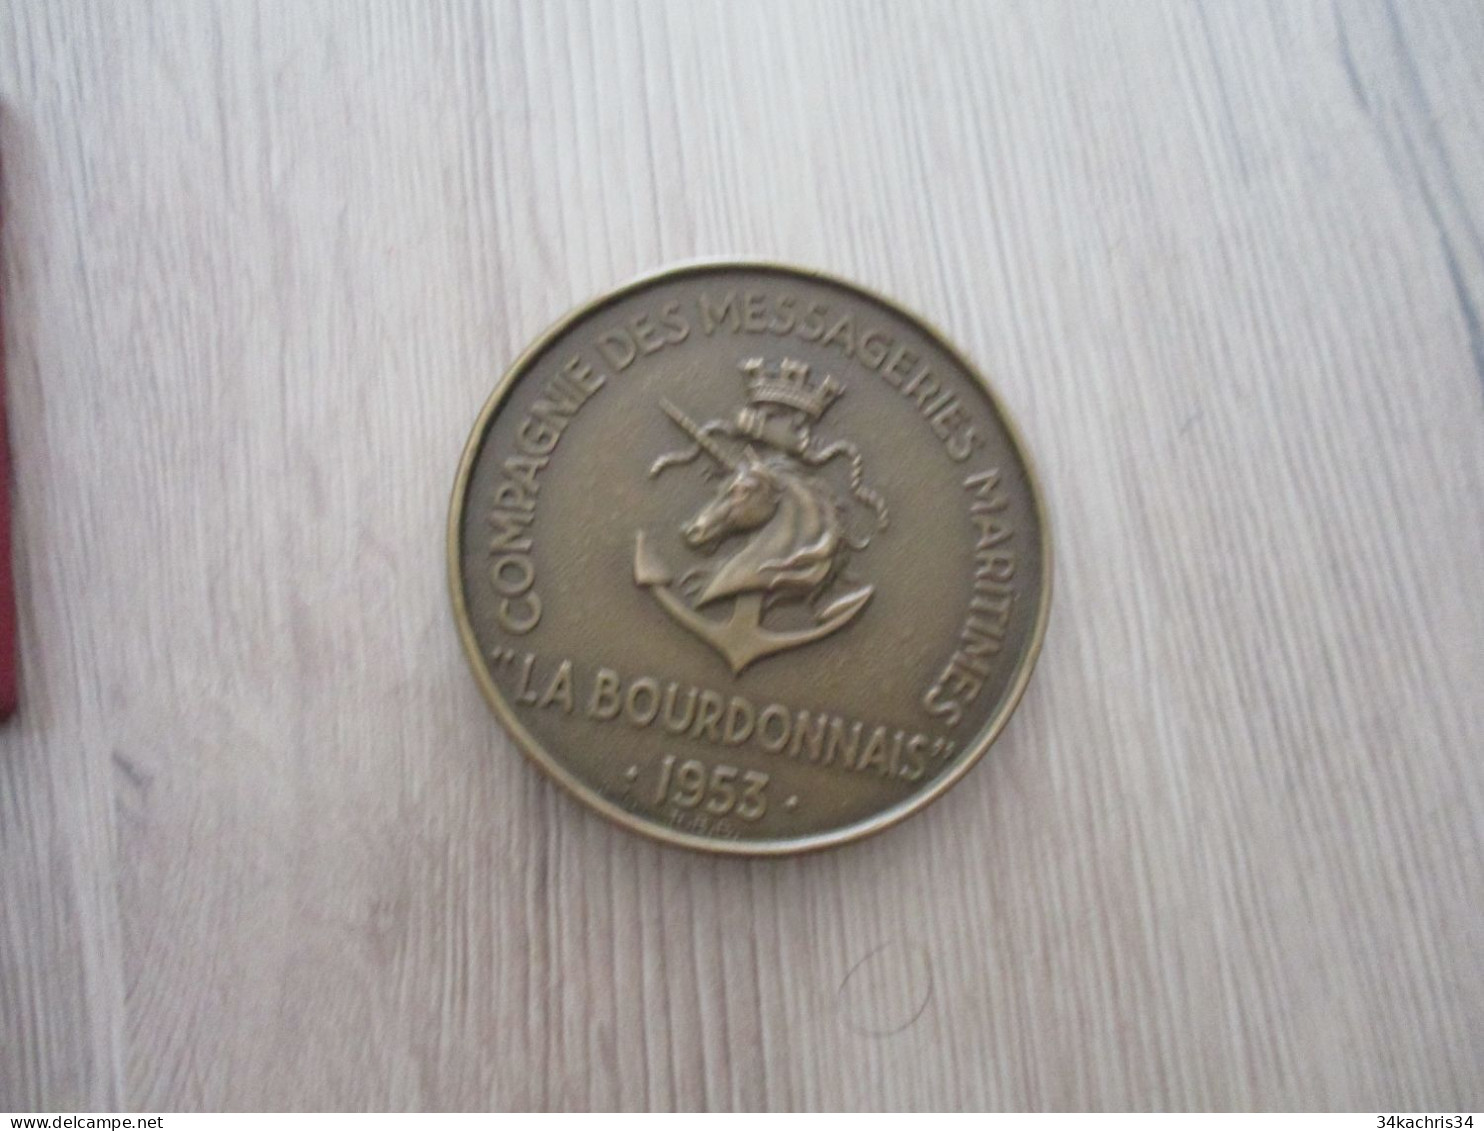 Médaille De Table La Bourdonnais Compagnies Messageries Maritimes 1953 5.5 Diam 100g Environs Dans Sa Boite - Maritieme Decoratie